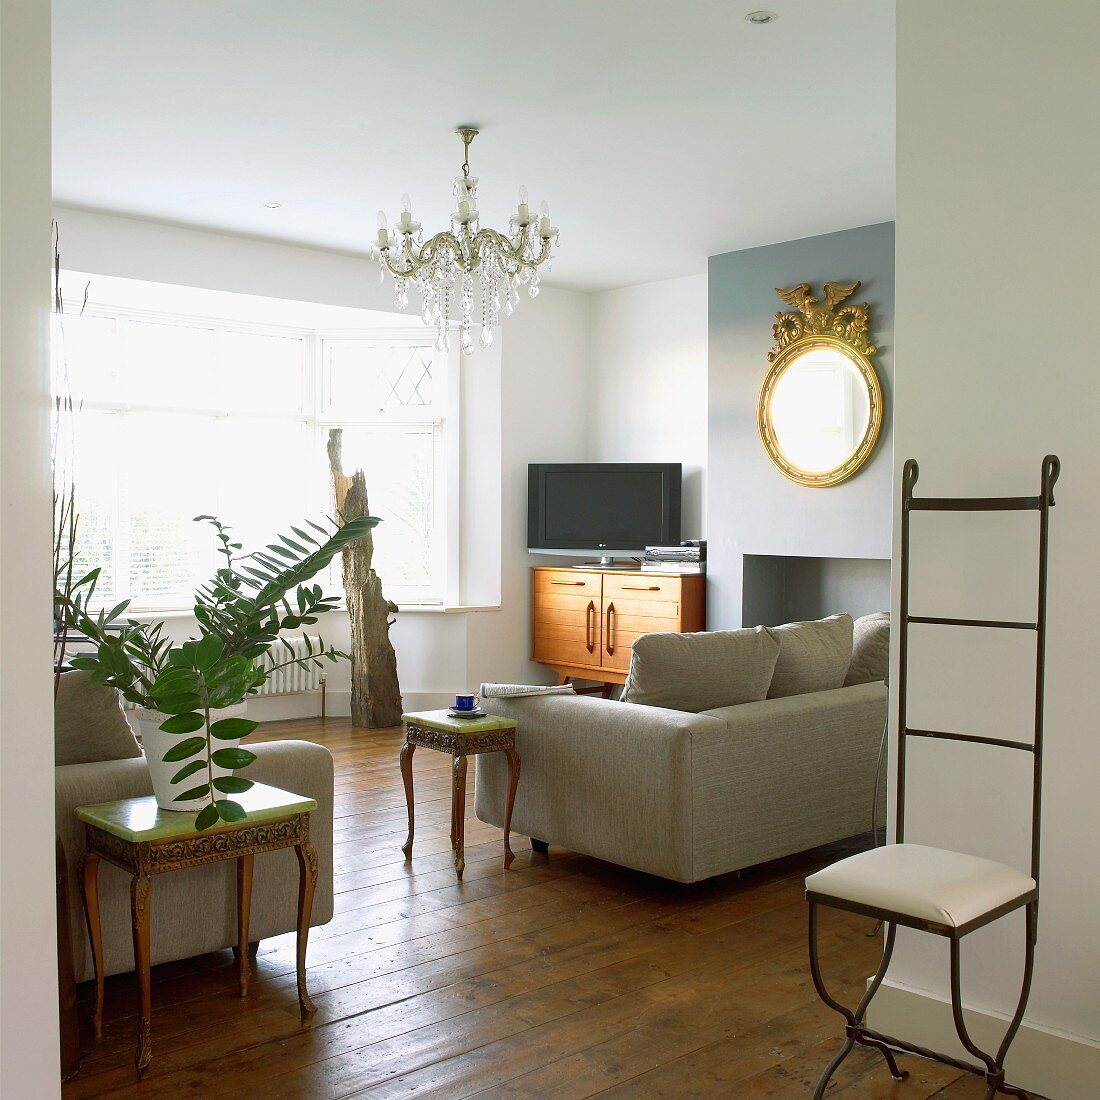 Möbelstilmix im Wohnraum mit zierlichem Eisenstuhl und Beistellstischen im Rokokostil neben modernen Polstersofas